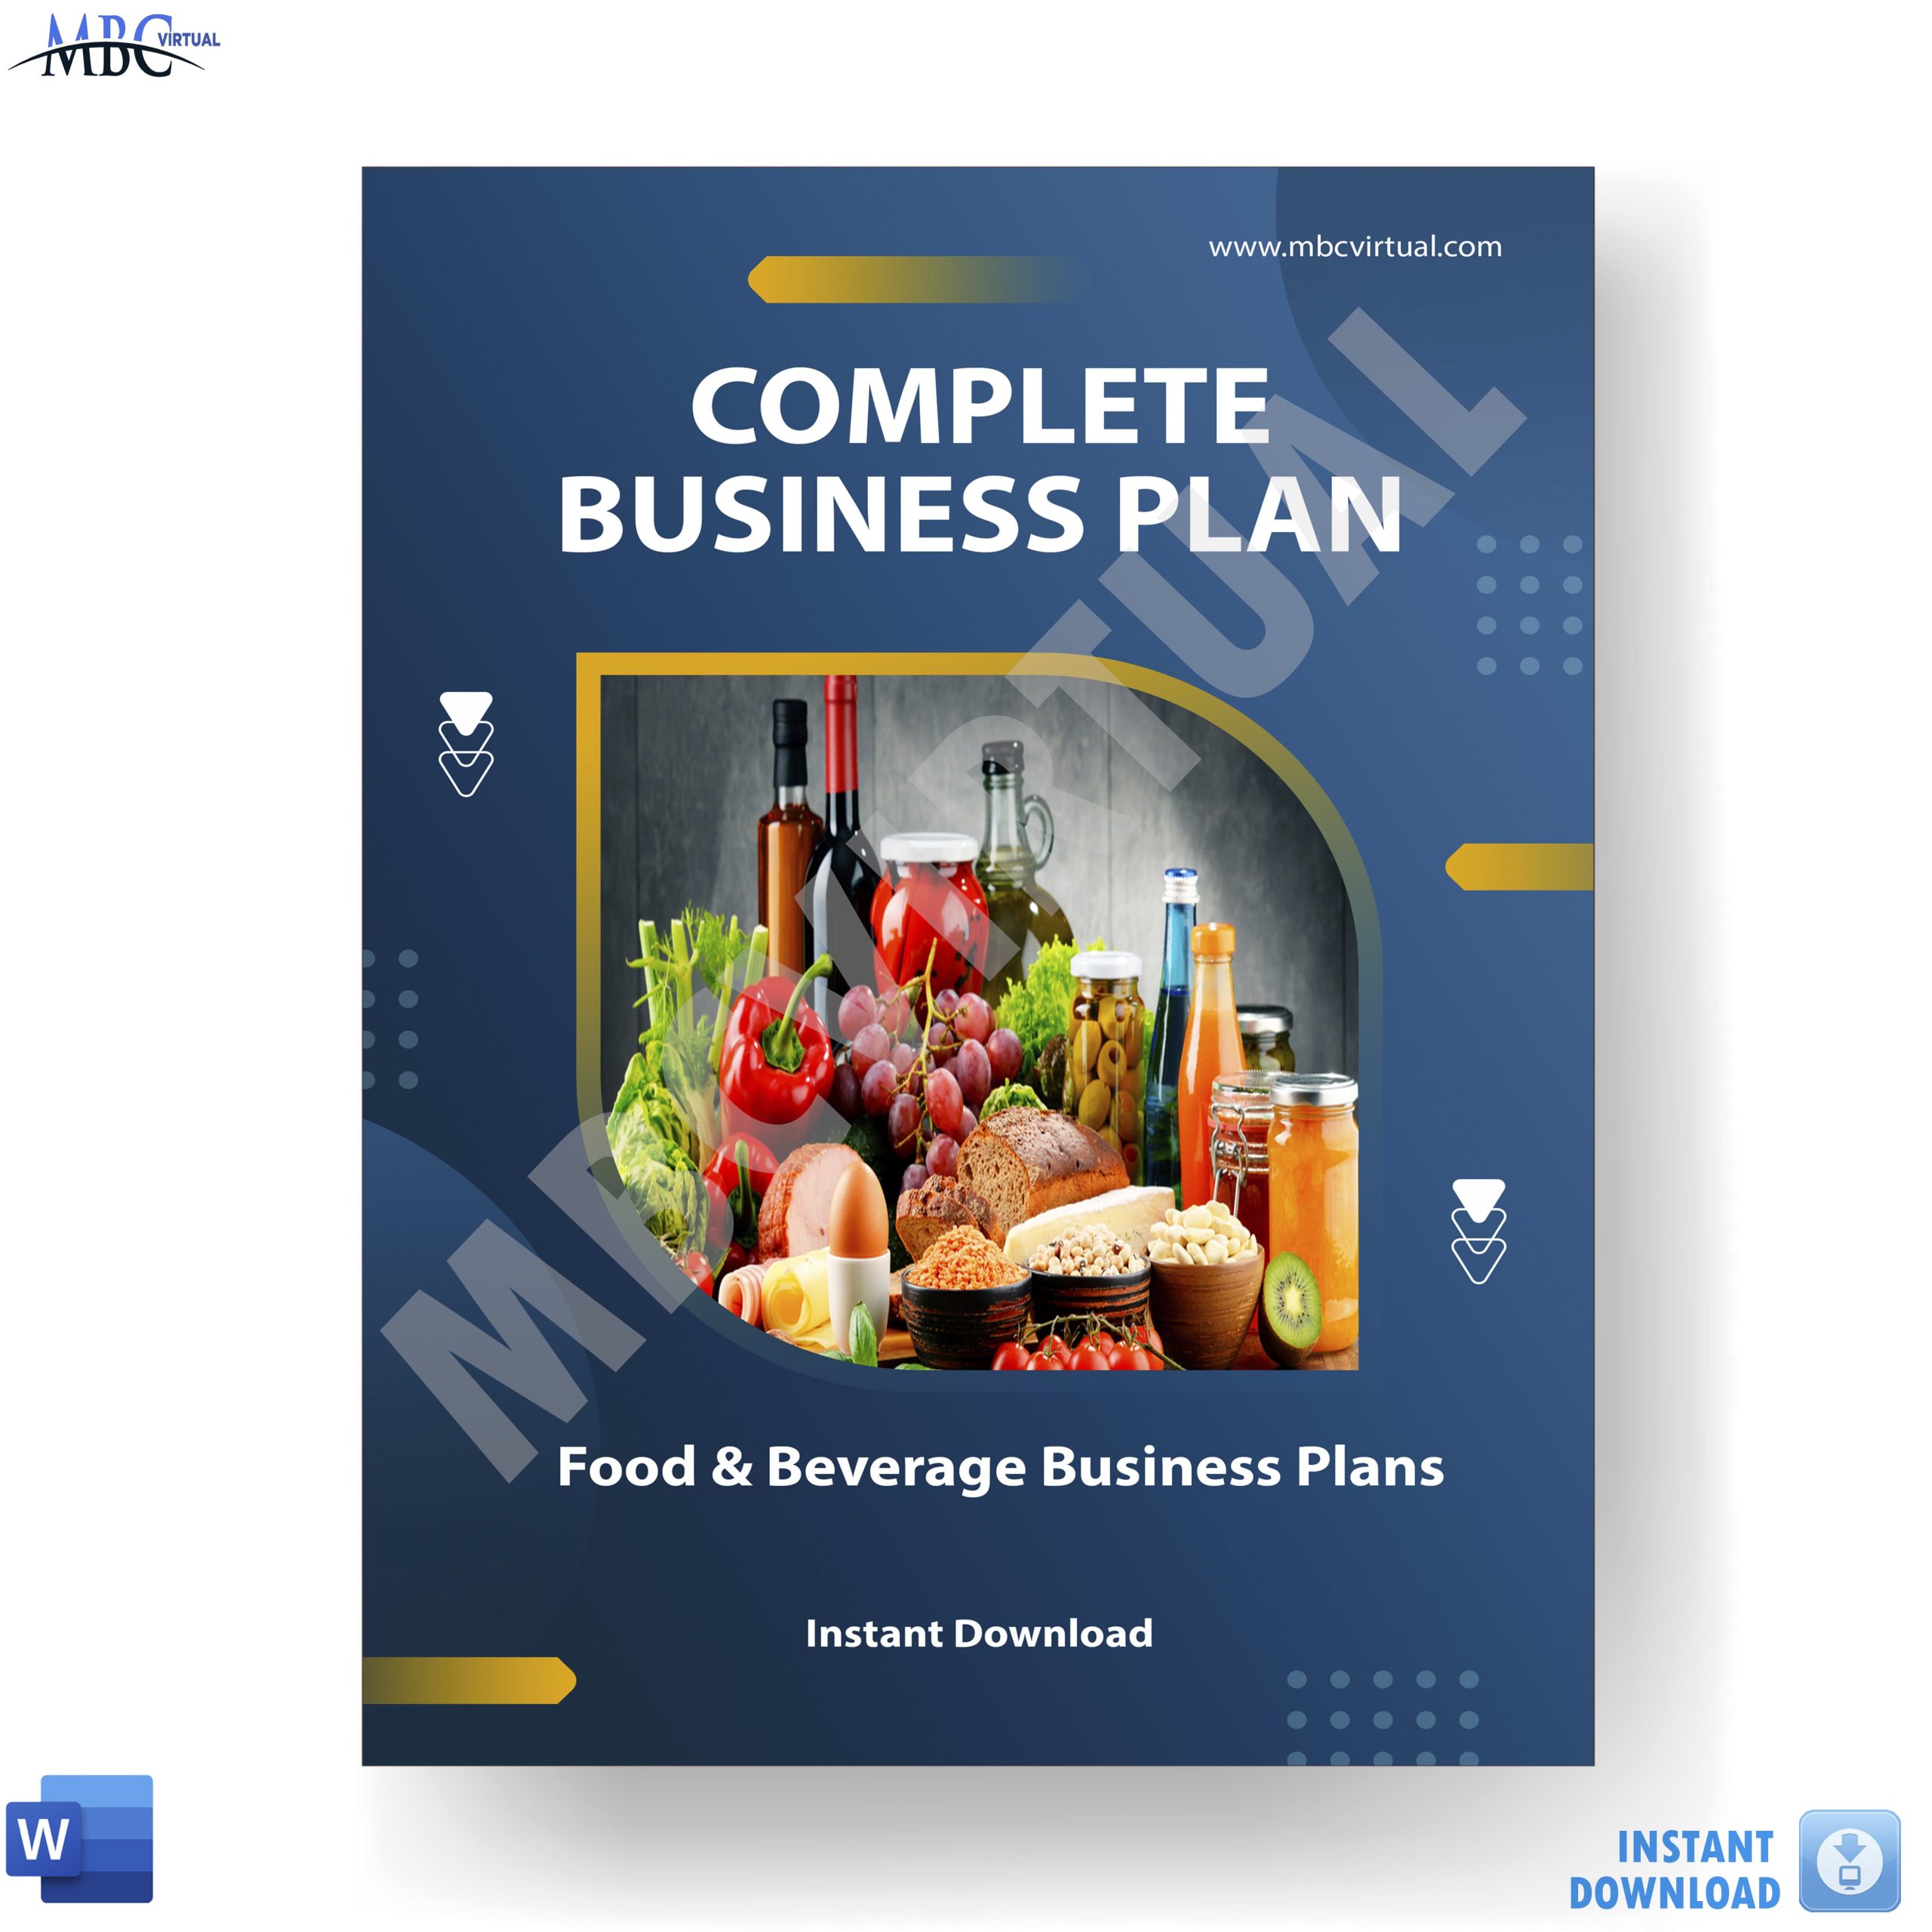 Food & Beverage Business Plans